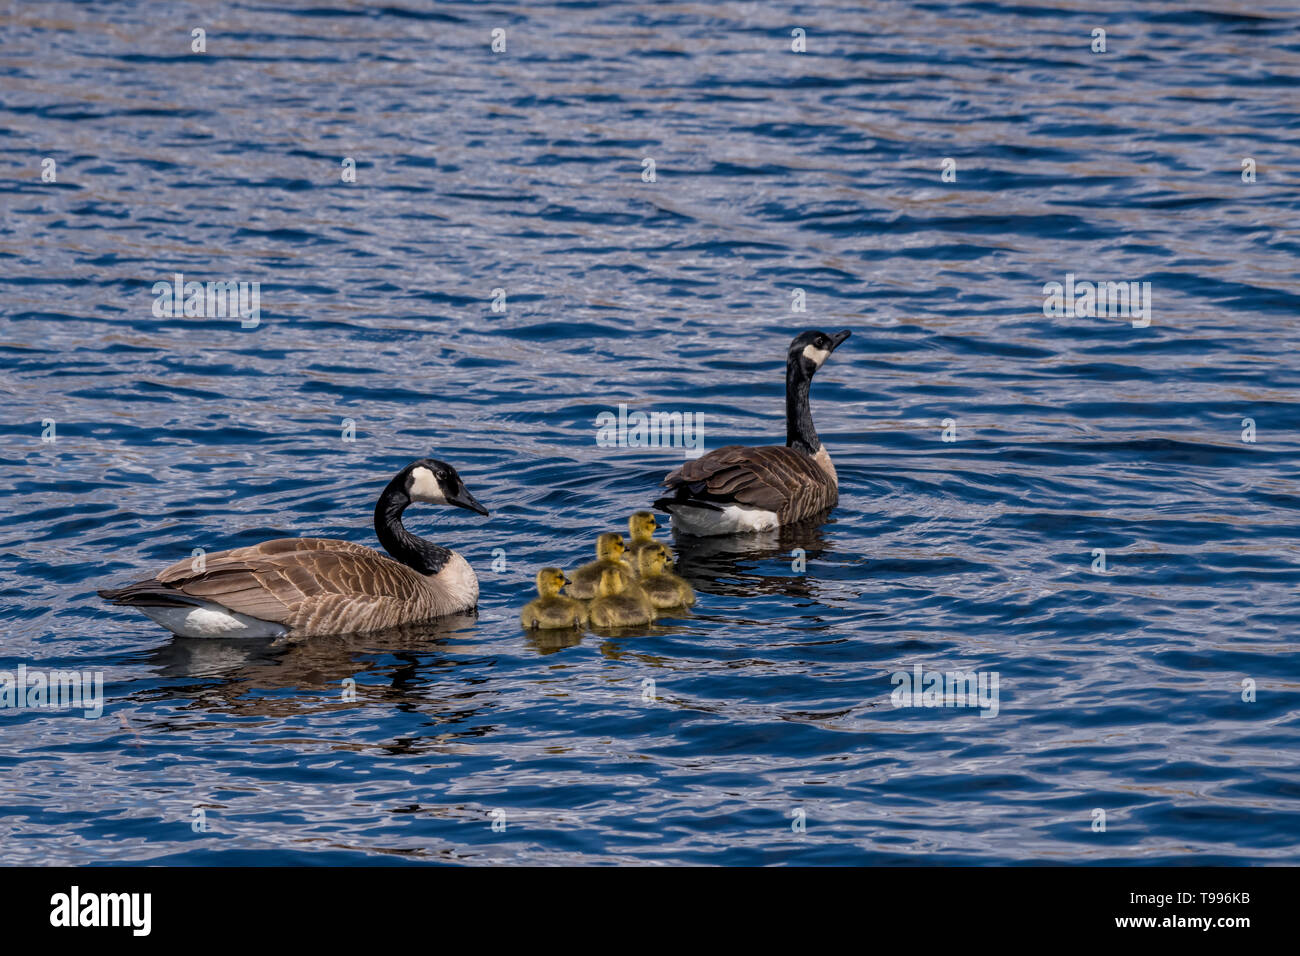 Dos gansos canadienses (Branta canadensis) adultos y cinco goslings (pichones) natación. Foto de stock